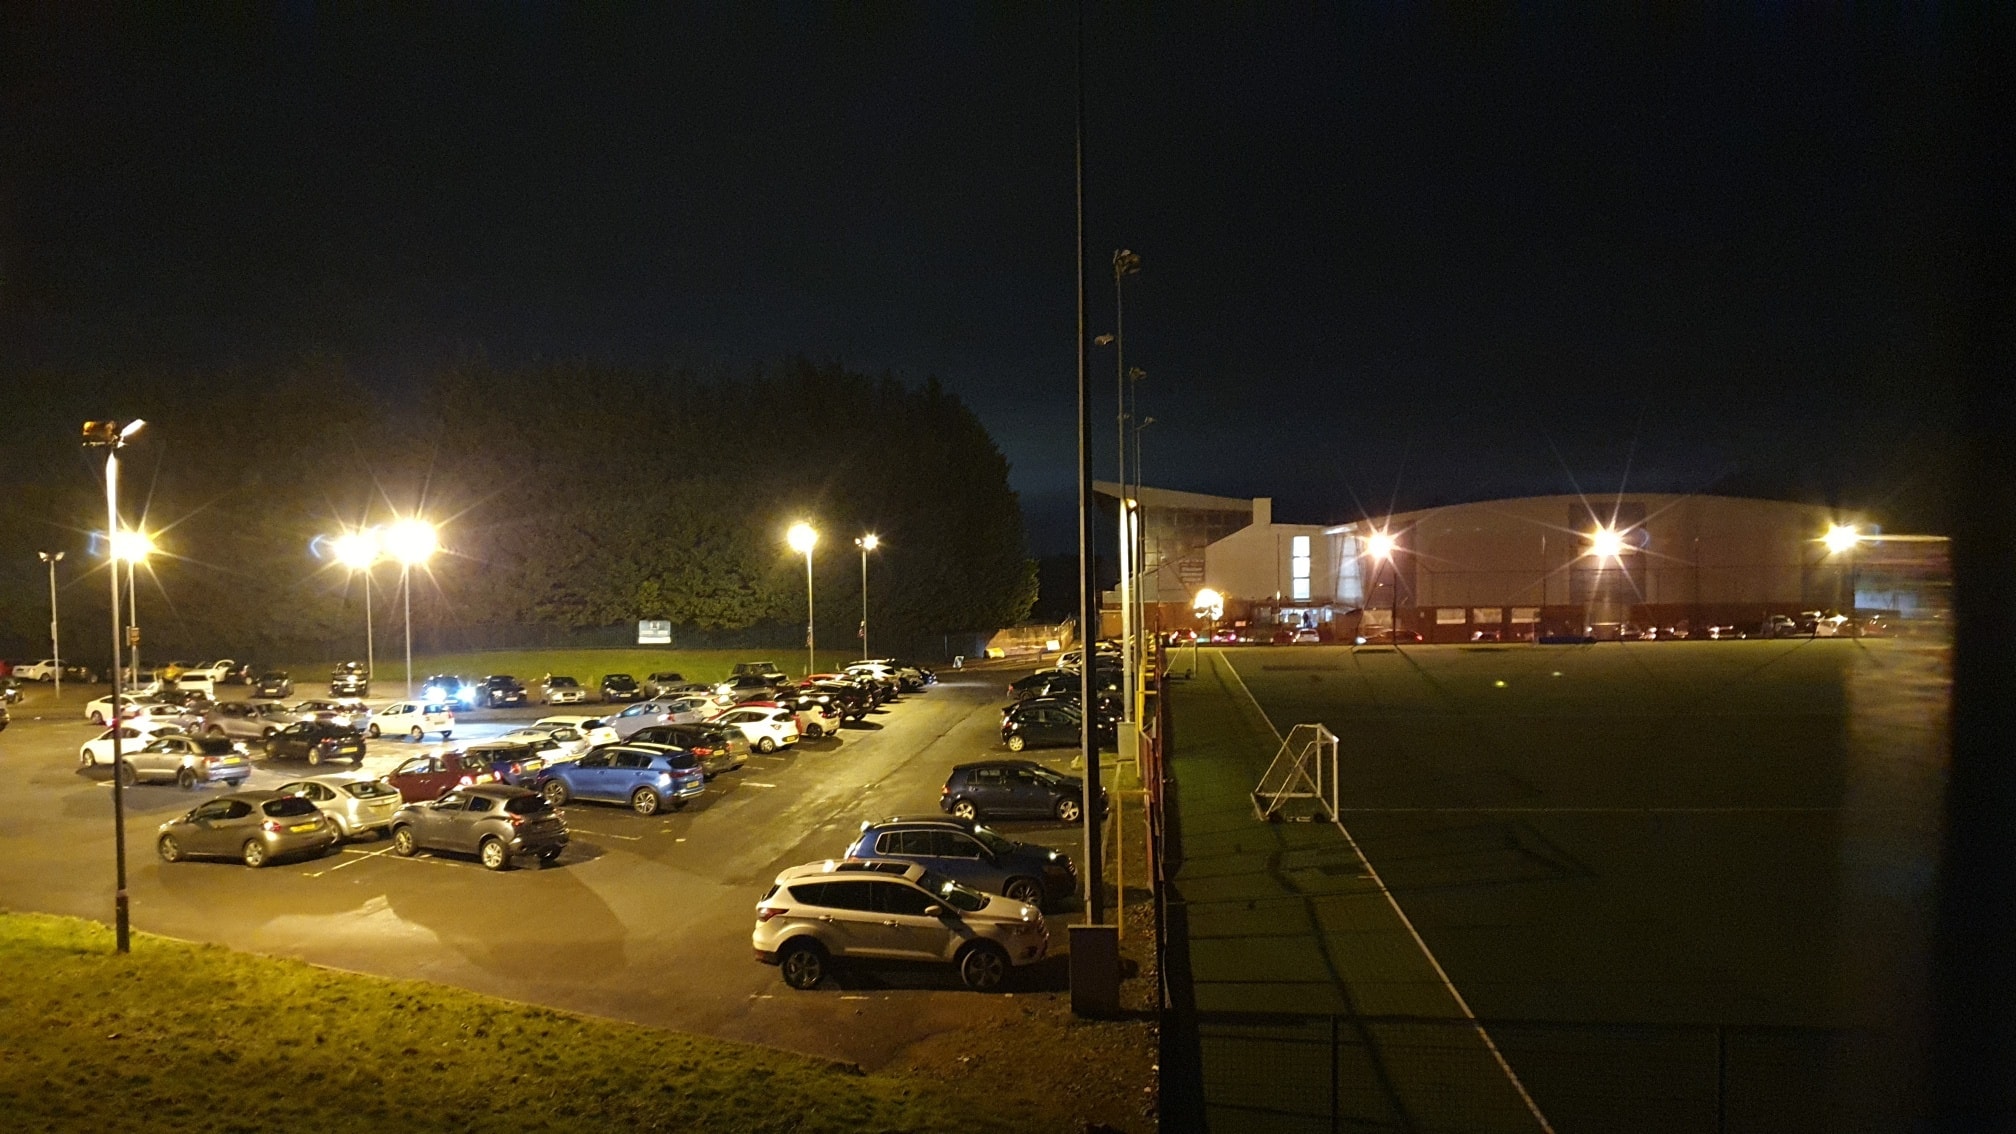 The car park at Cwmbran Stadium